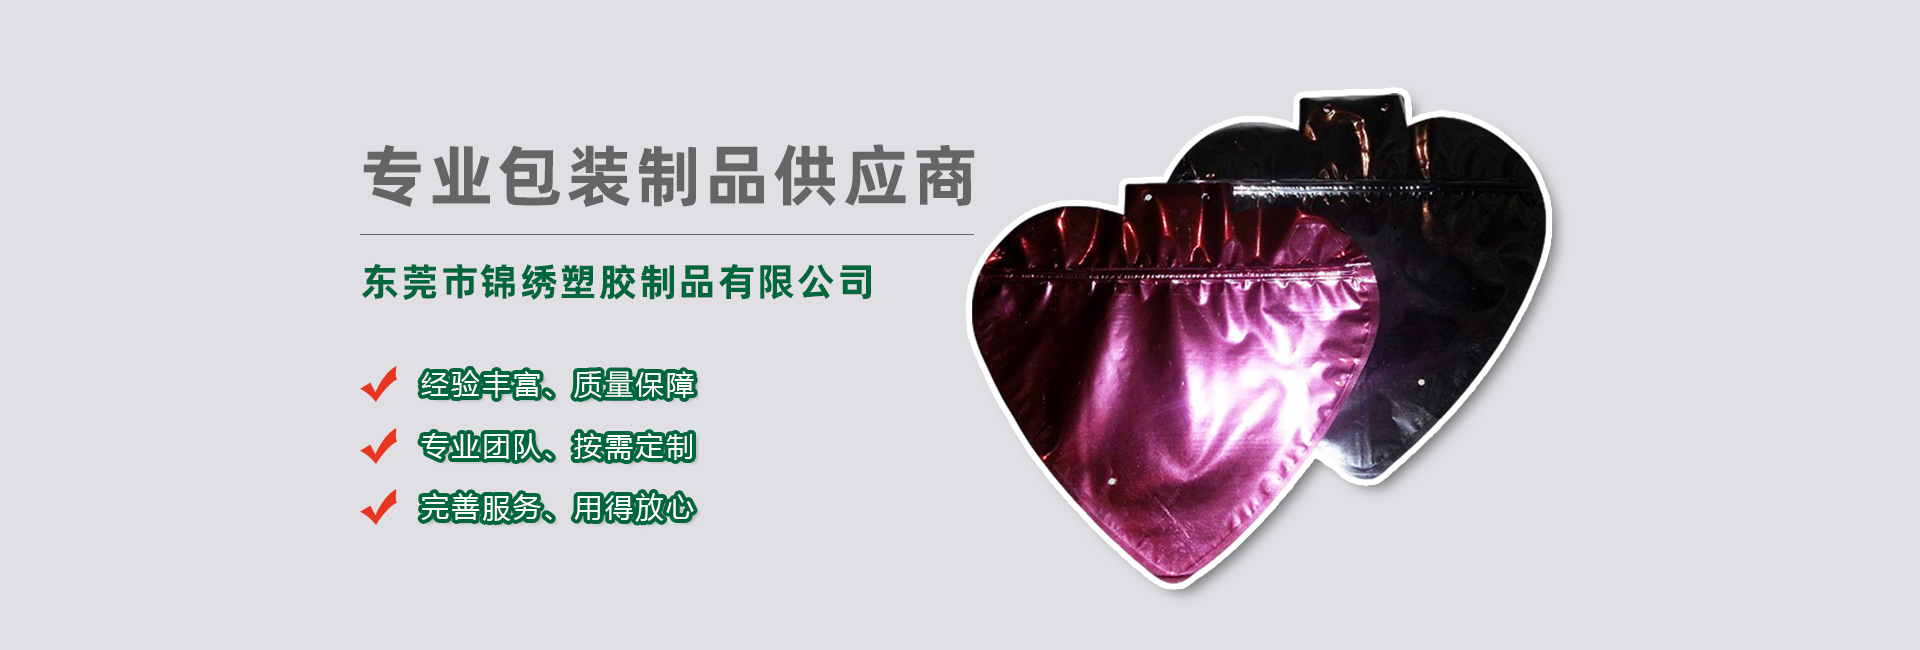 湖南食品袋banner